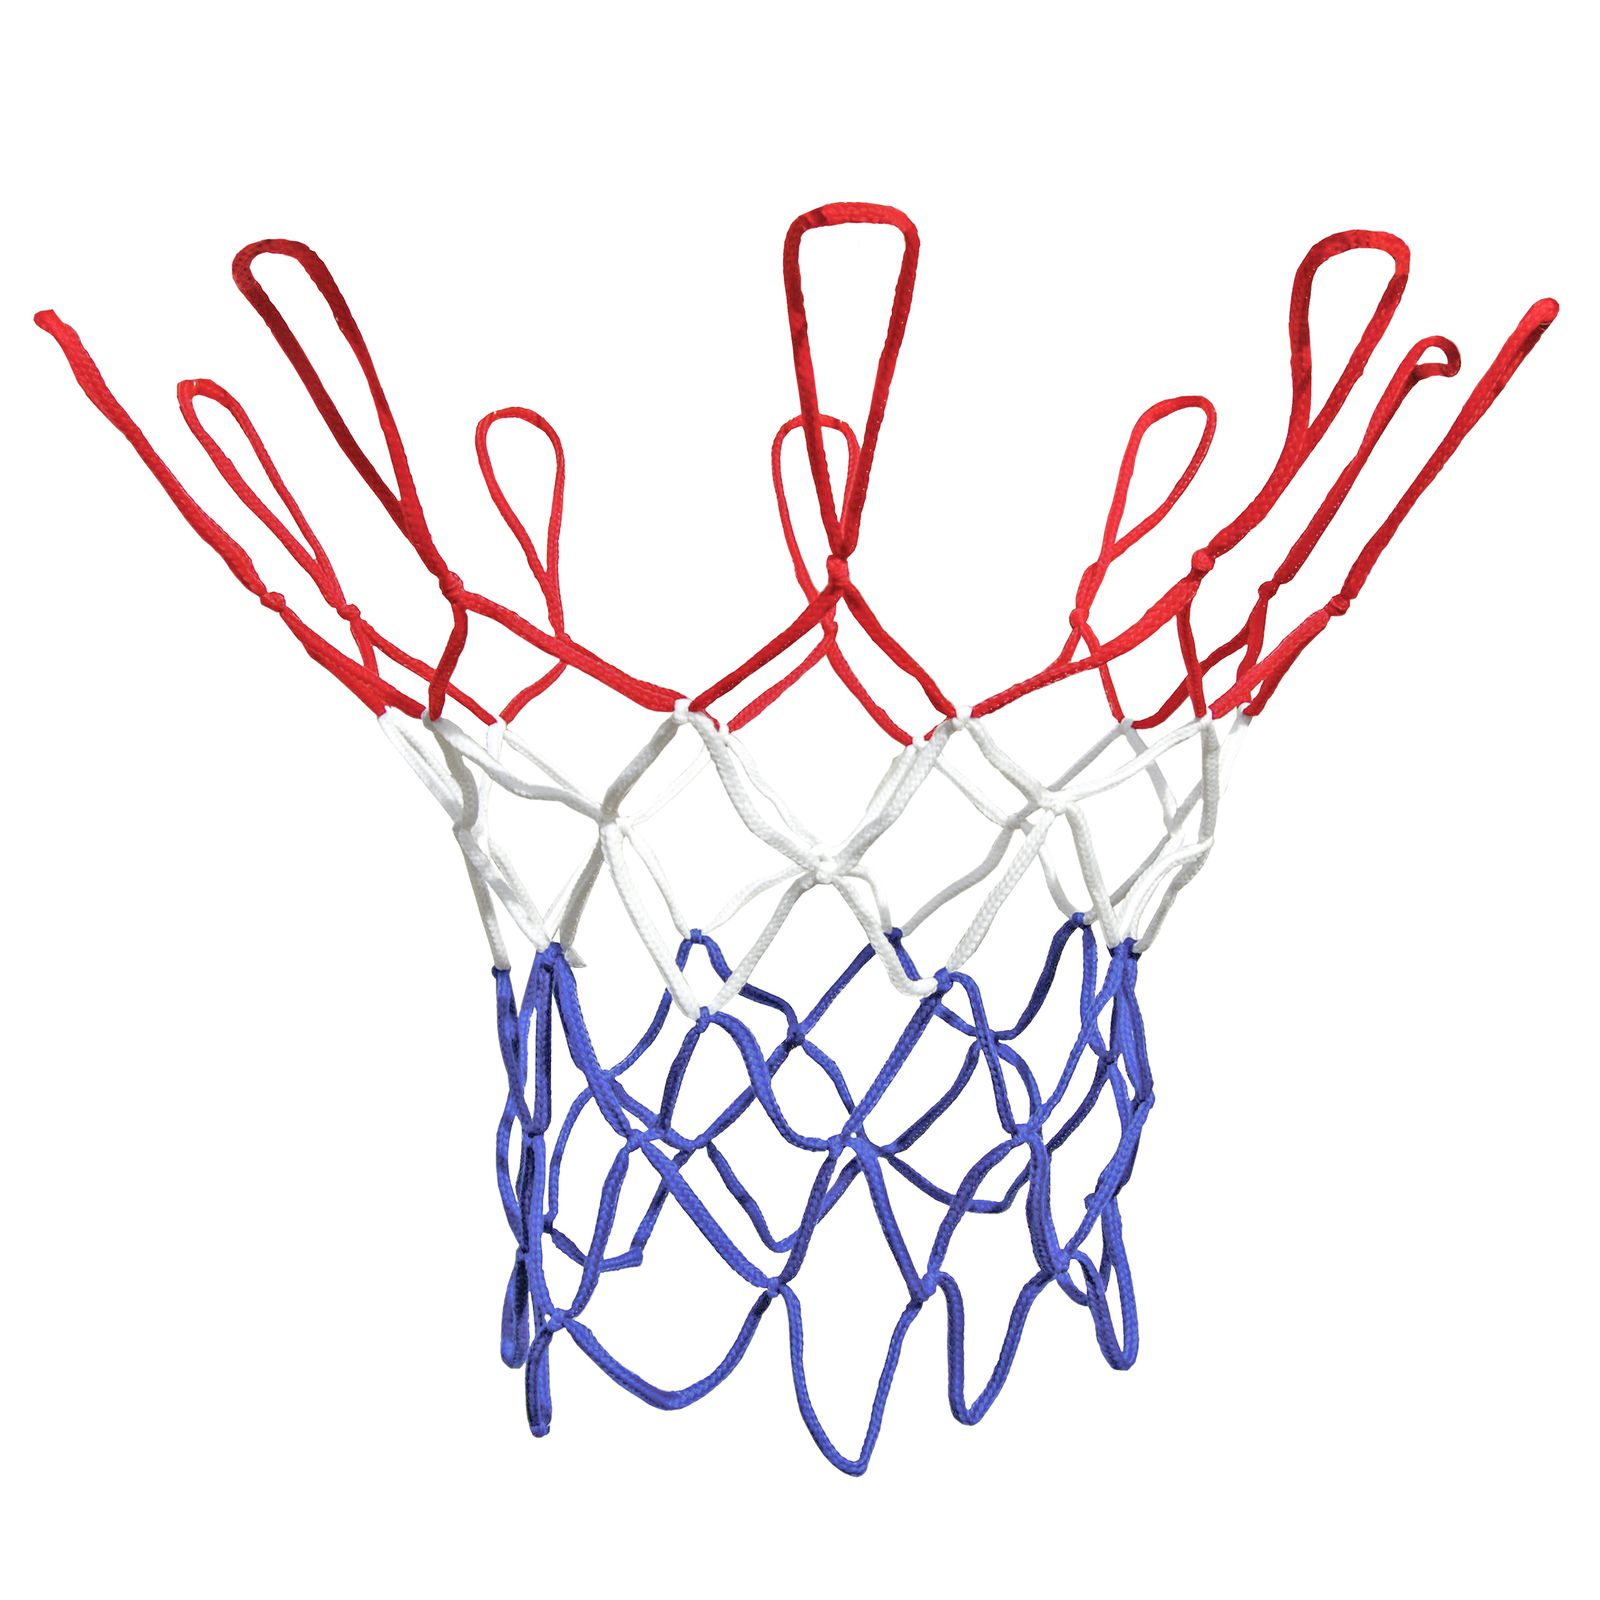 Qualität Basketball netz rot/weiss/blau basketballnetz 45 cm 12 Schlaufen NW DA 